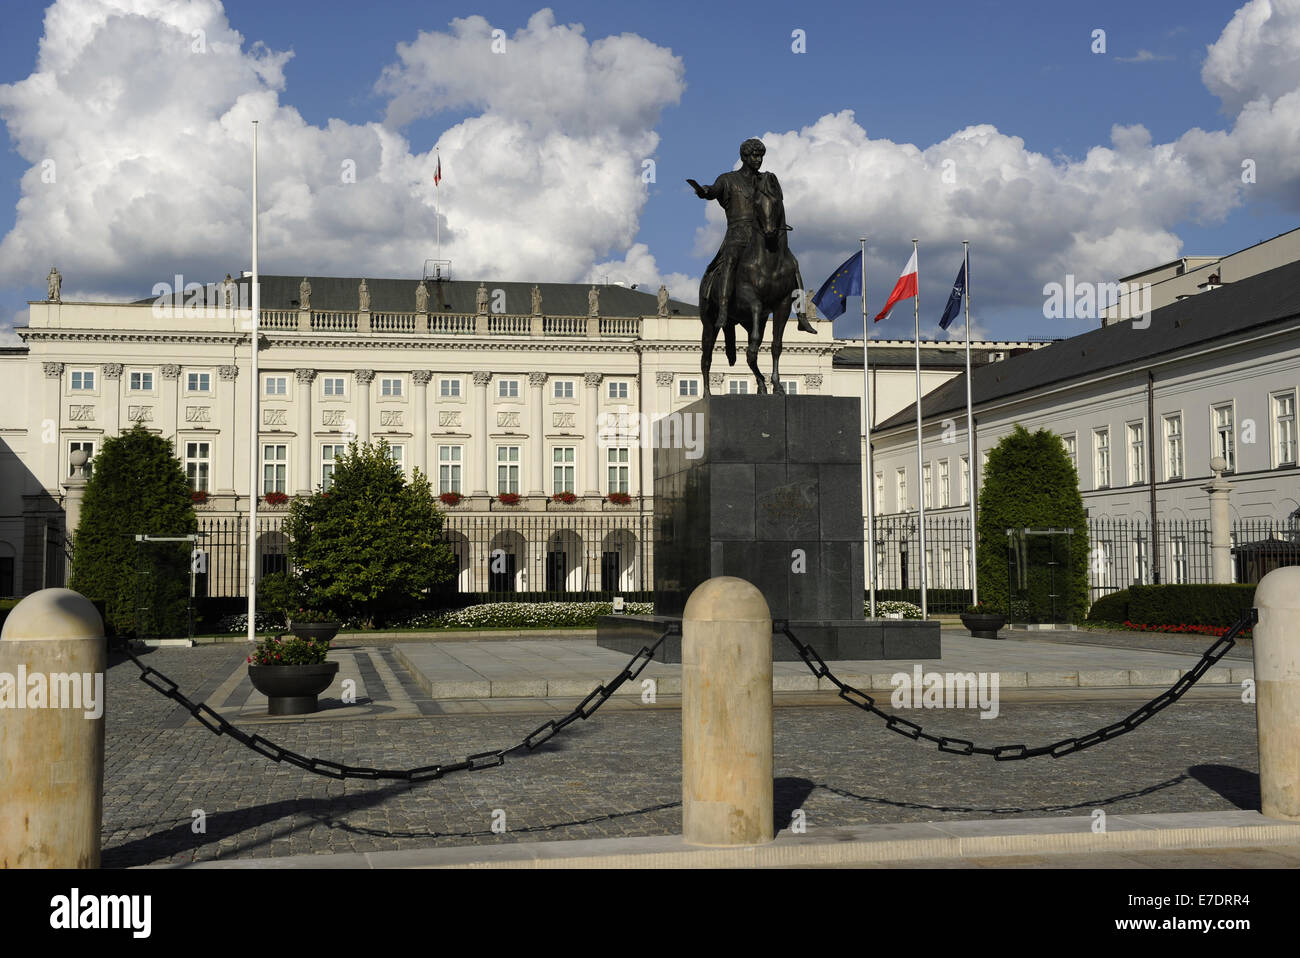 Polonia. Varsovia. Palacio presidencial por Chrystian Piotr Aigner y estatua ecuestre del príncipe Jozef Poniatowski (1763-1813). Foto de stock